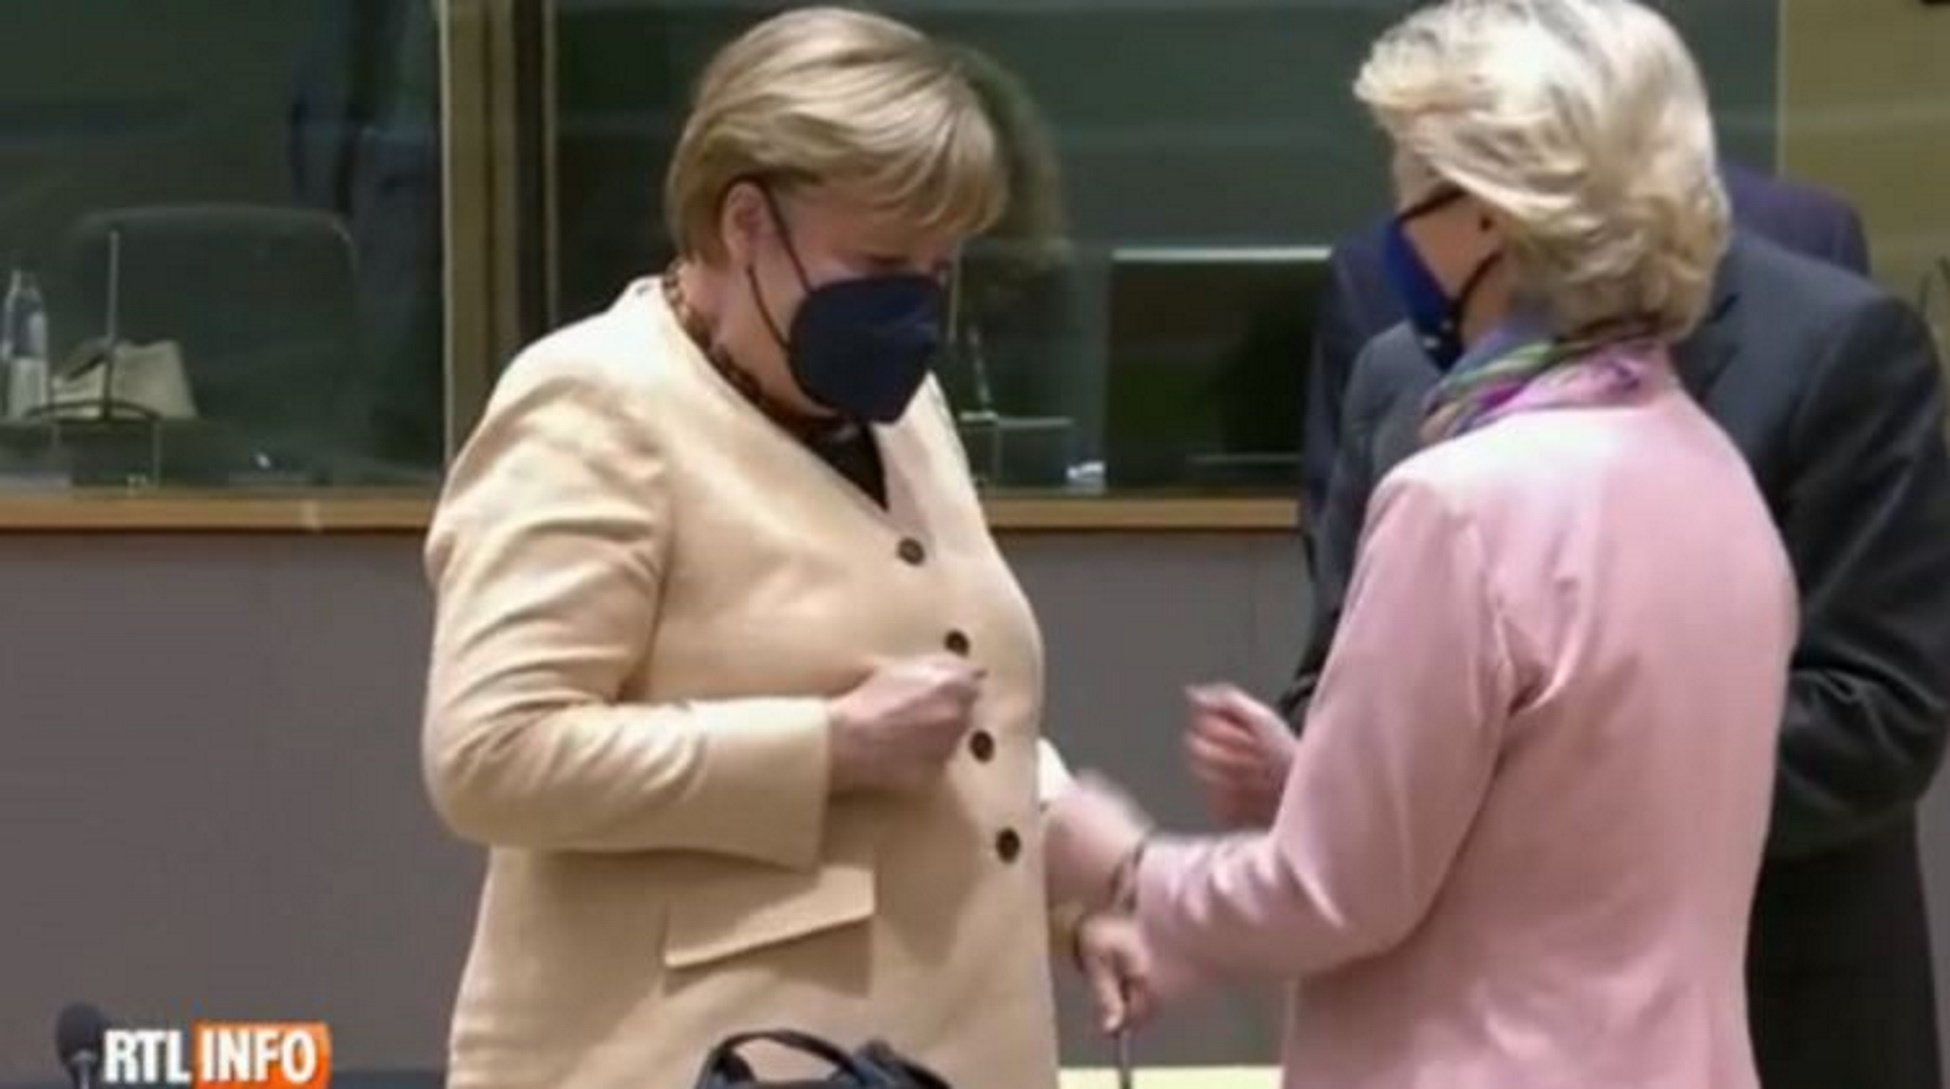 VíDEO | El momento de pánico de Angela Merkel con Von der Leyen